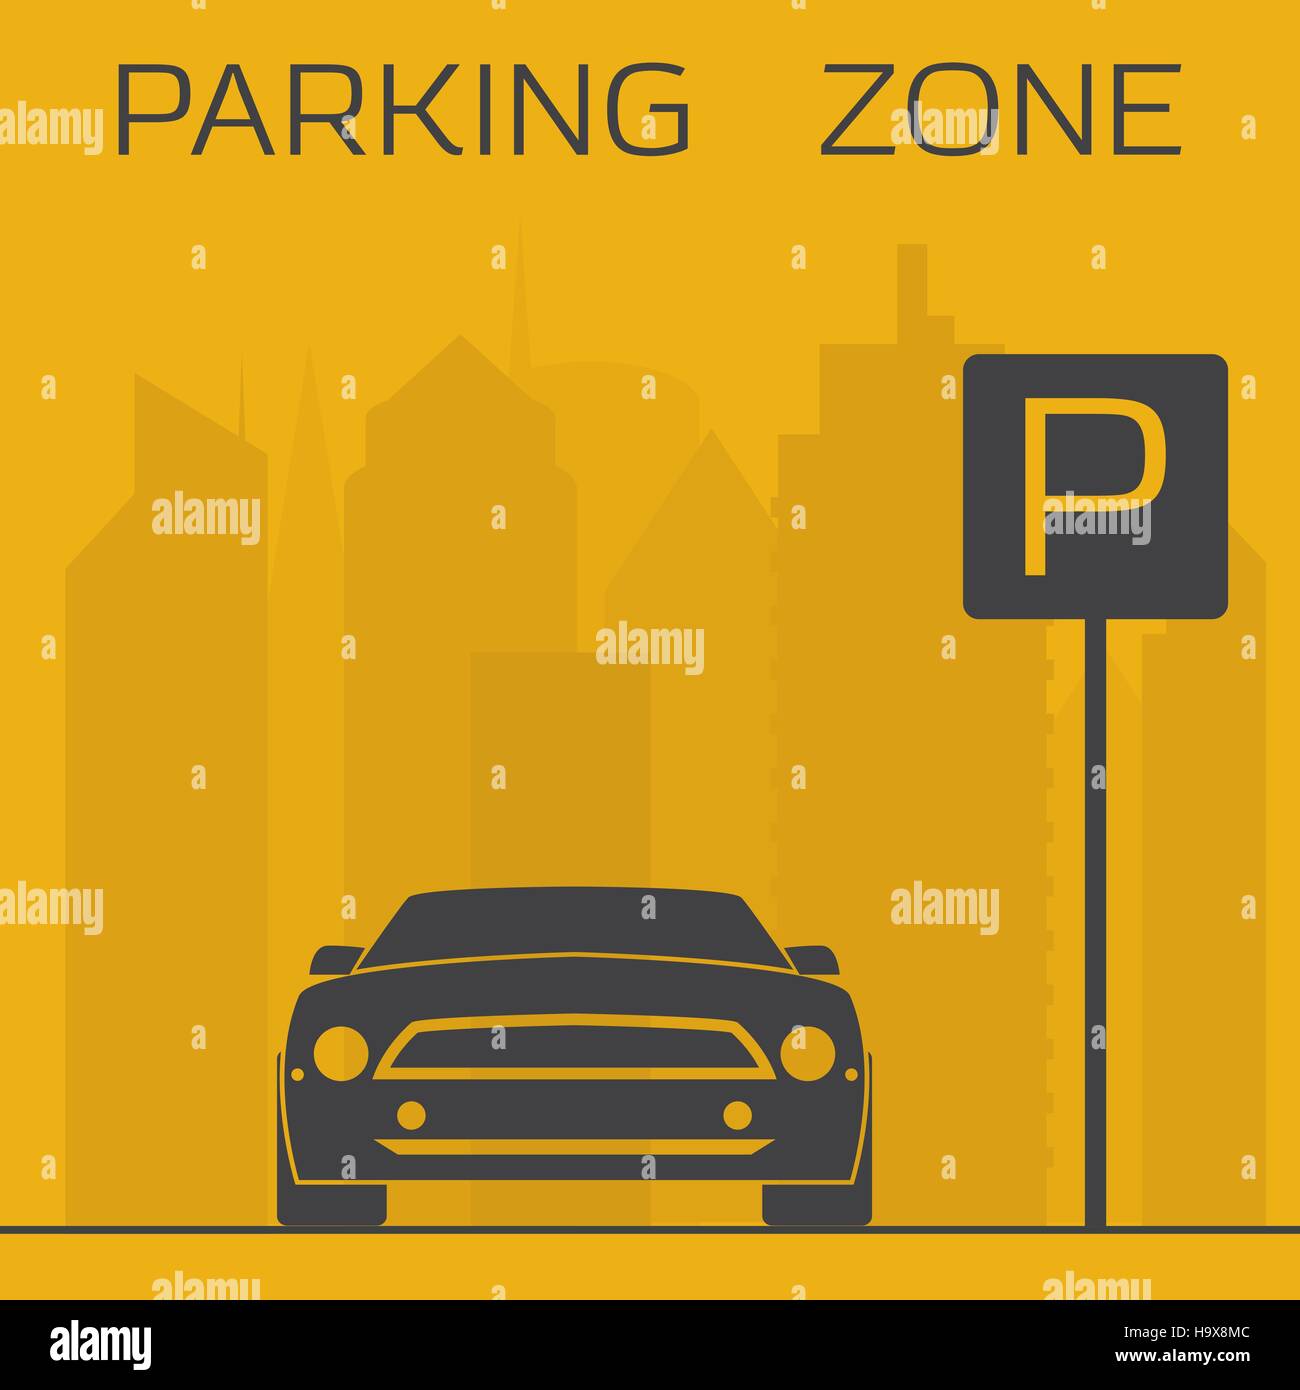 Gelb und schwarz, die einfache Darstellung Zone parken. Sportauto auf Wolkenkratzer Hintergrund in der Nähe von Parkplatz Zeichen. Stock Vektor